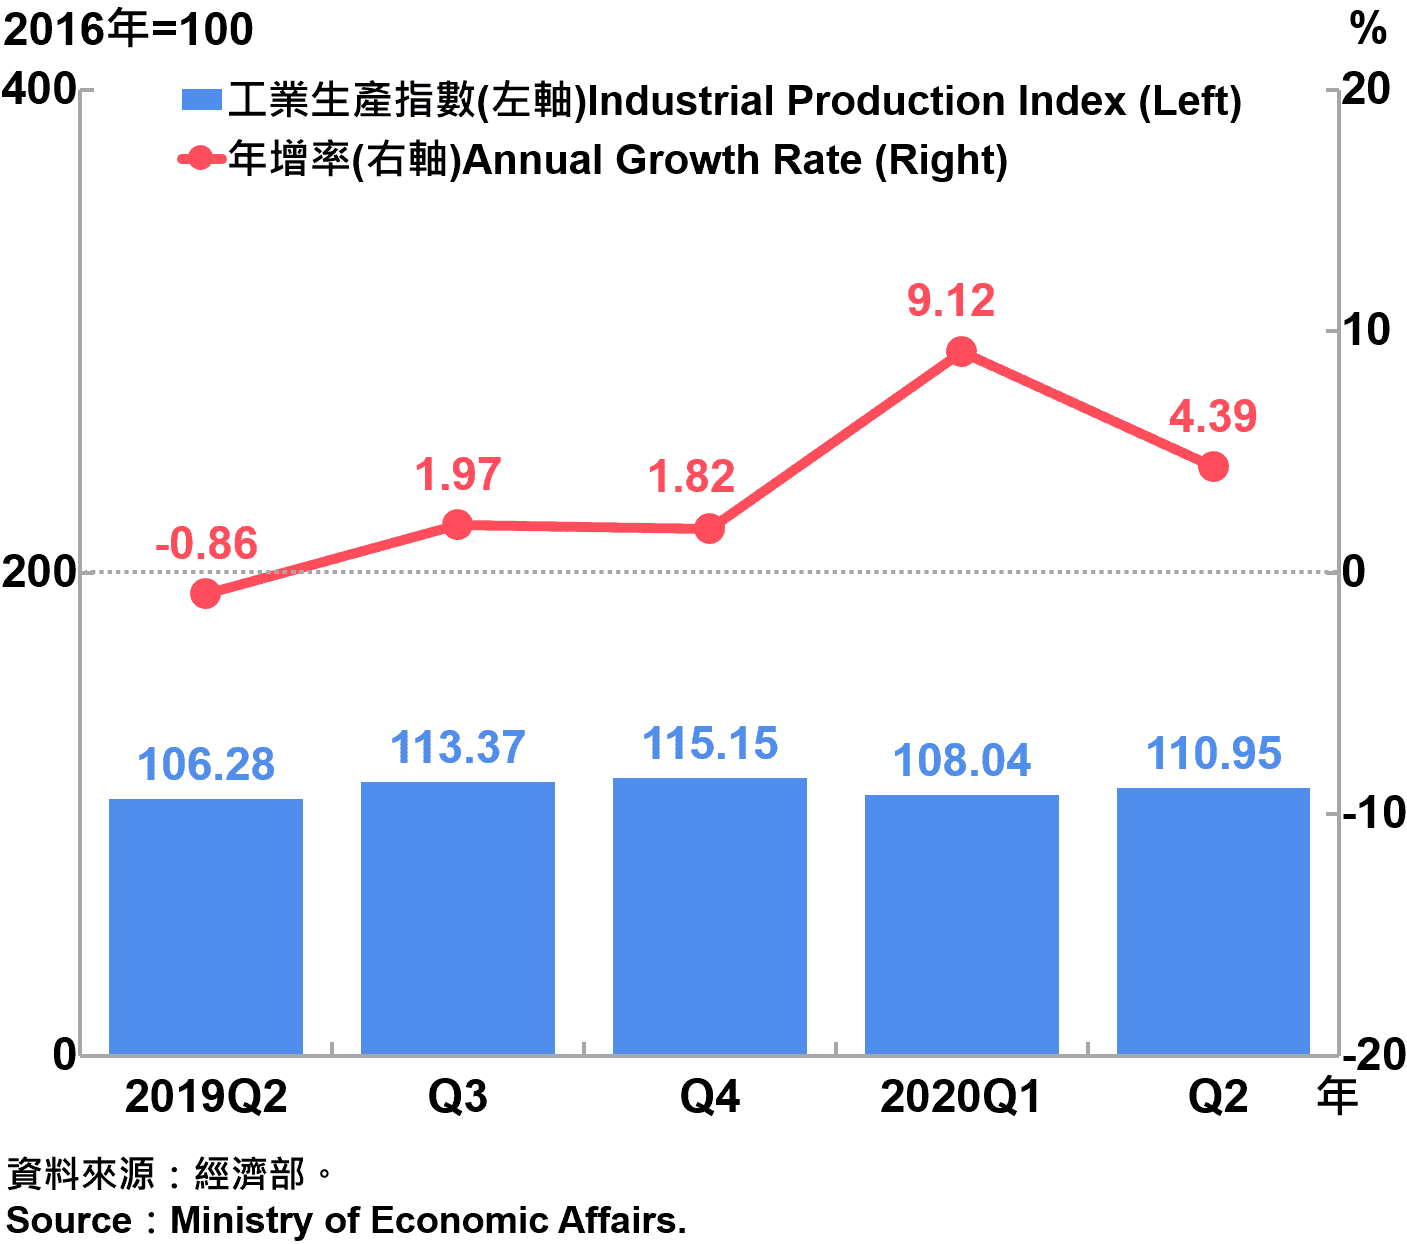 臺灣工業生產指數Industrial Production Index in Taiwan